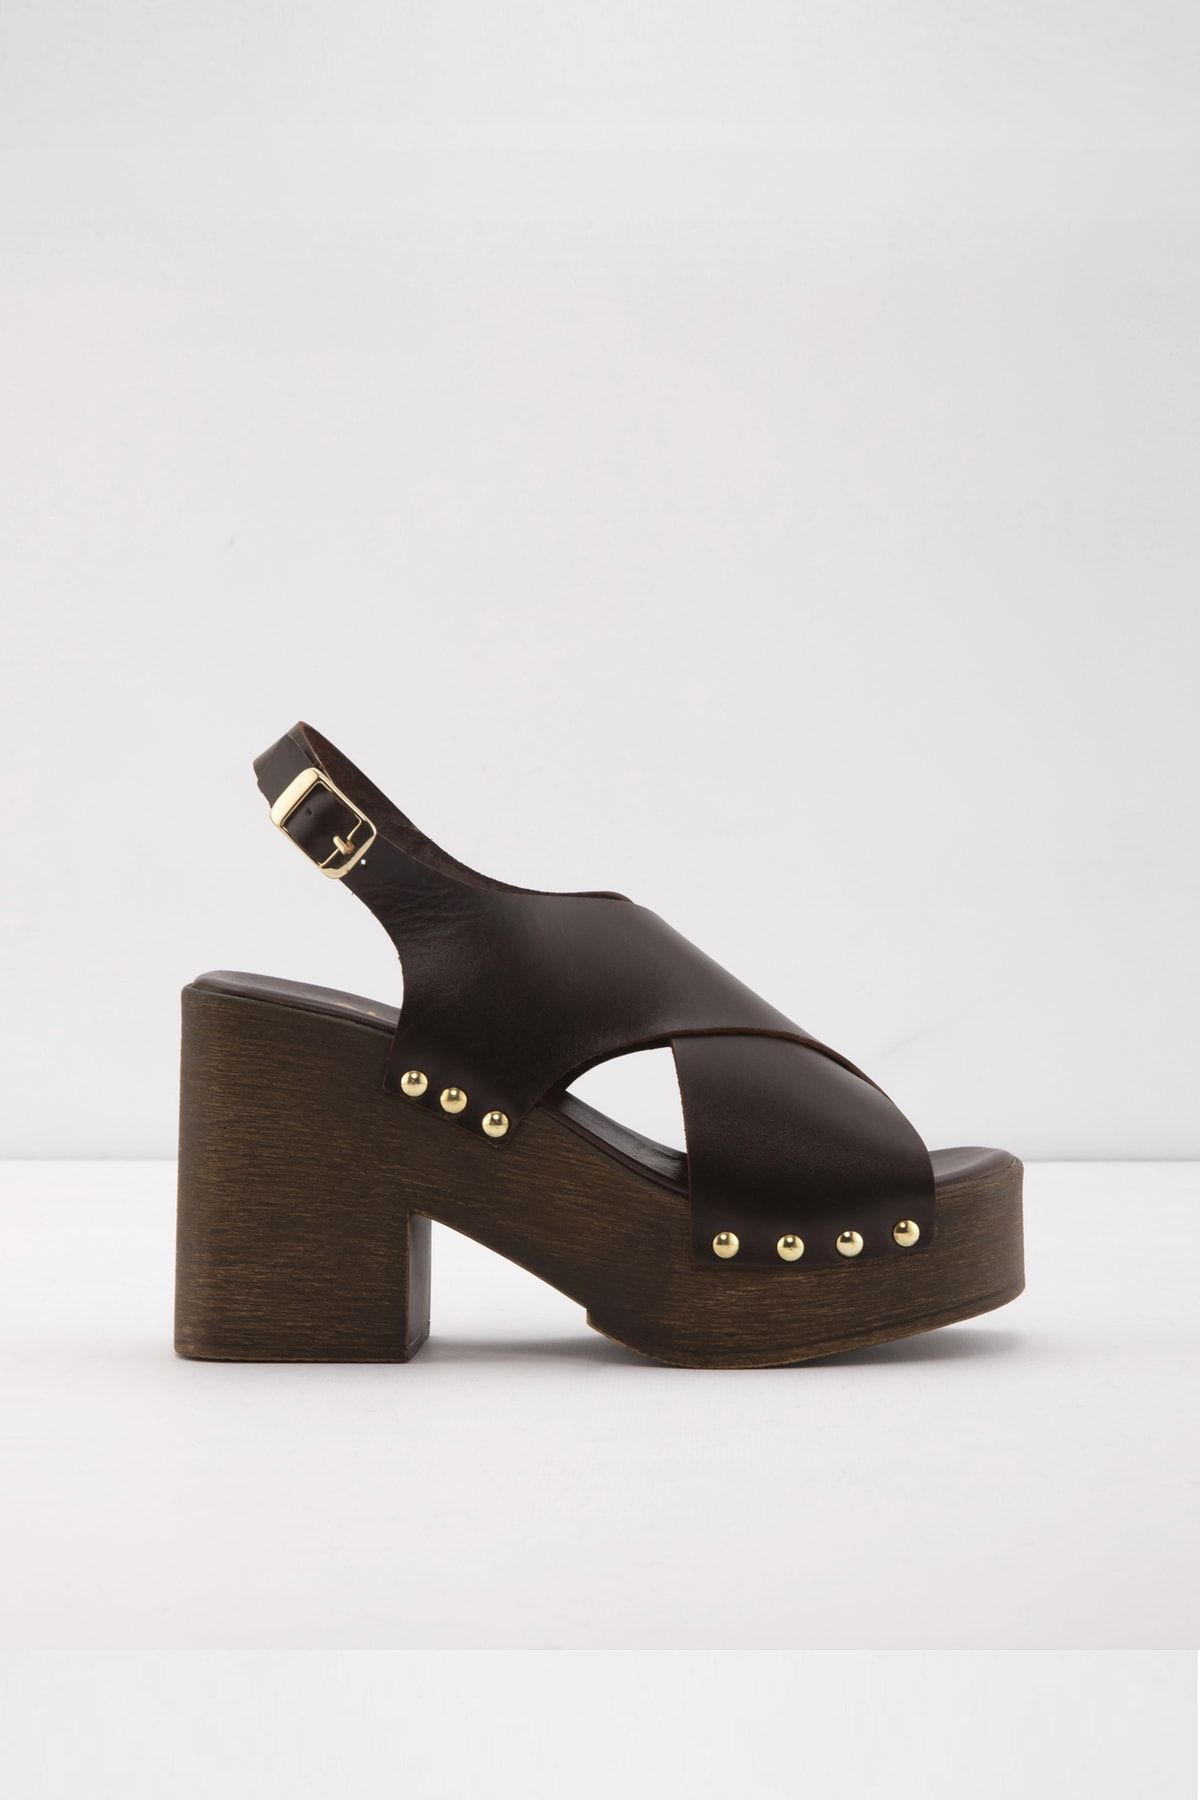 Aldo Tıtus-tr - Kahve Kadın Topuklu Sandalet